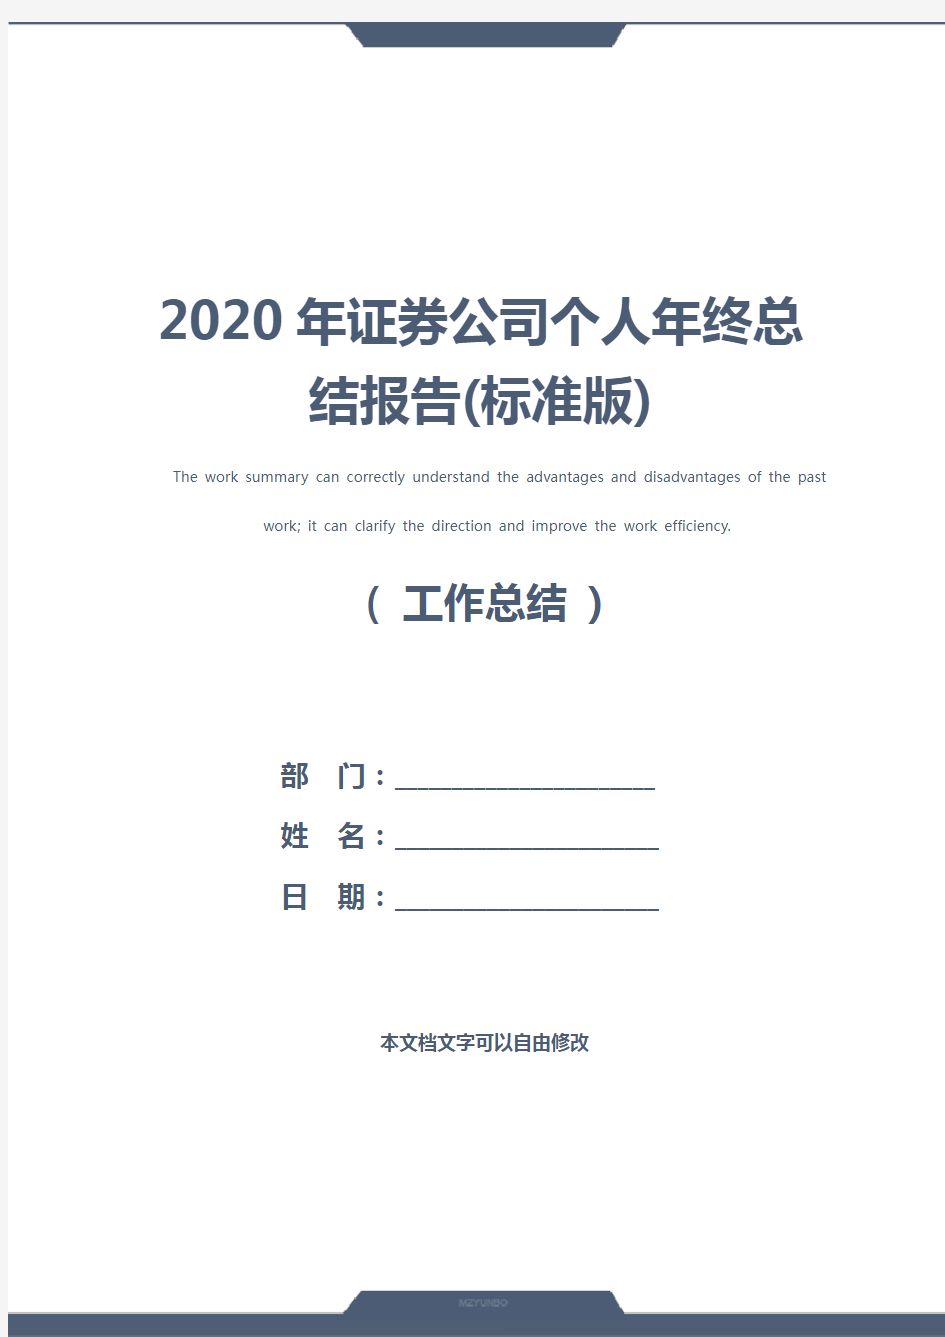 2020年证券公司个人年终总结报告(标准版)